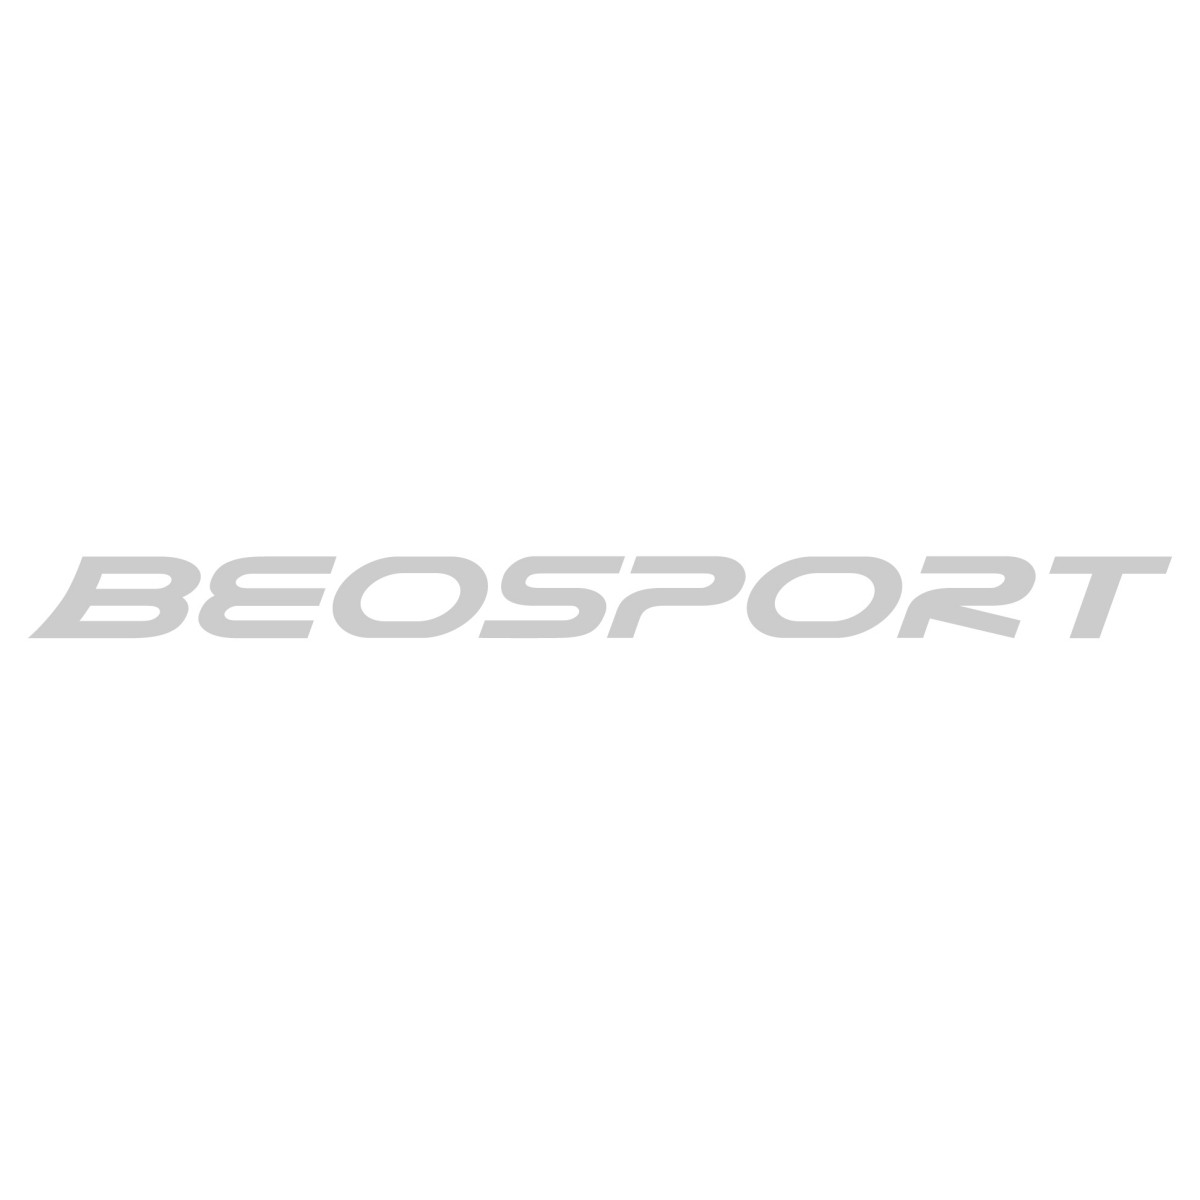 Putne torbe i koferi - Aksesoari - Beosport.com